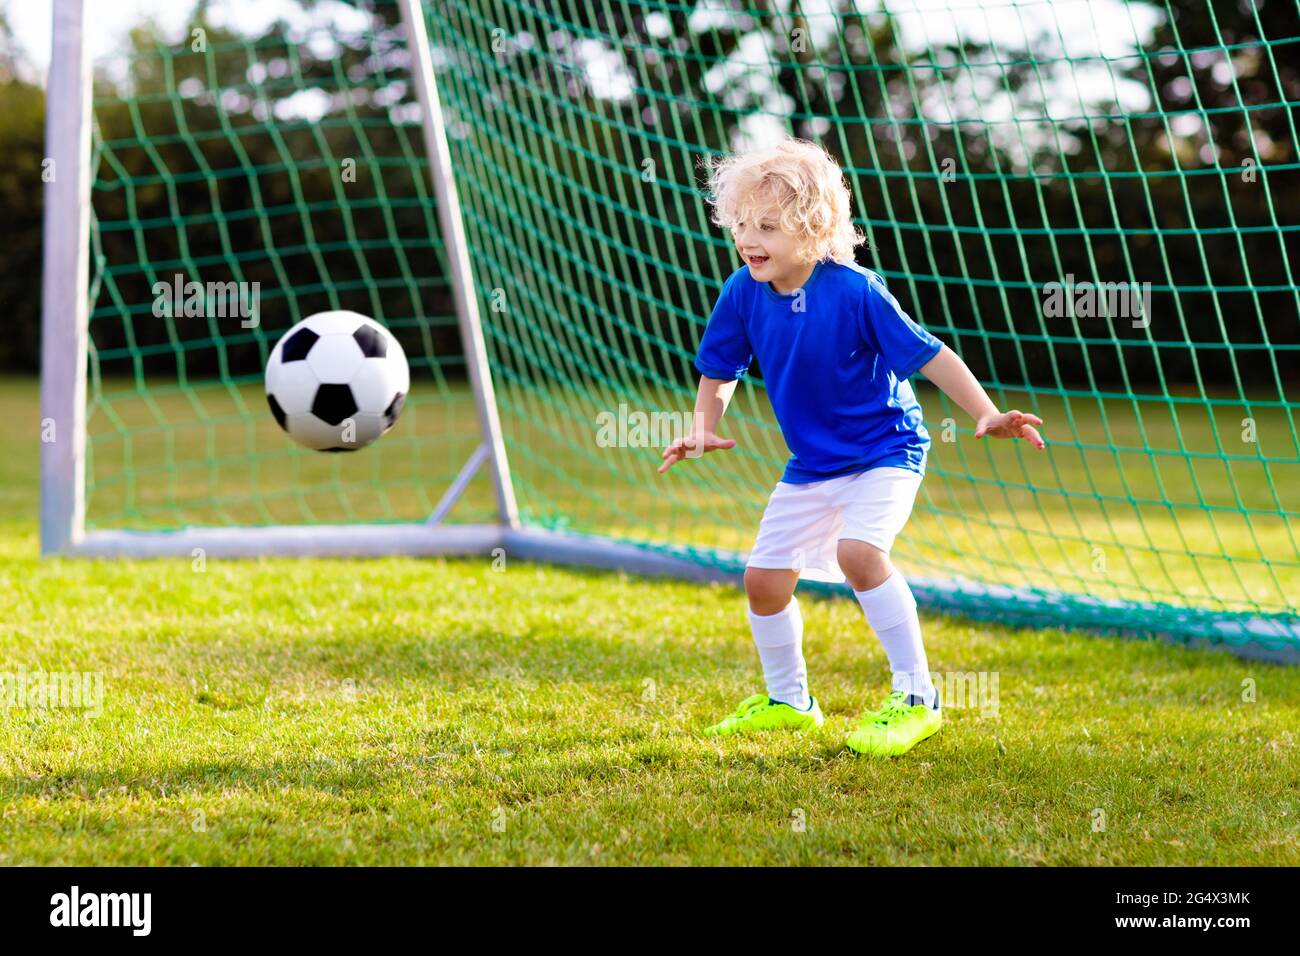 Los niños juegan al fútbol en el campo al aire libre. Los niños anotan meta el partido de fútbol. Niño pequeño pateando pelota. Niño de running con camiseta y tacos